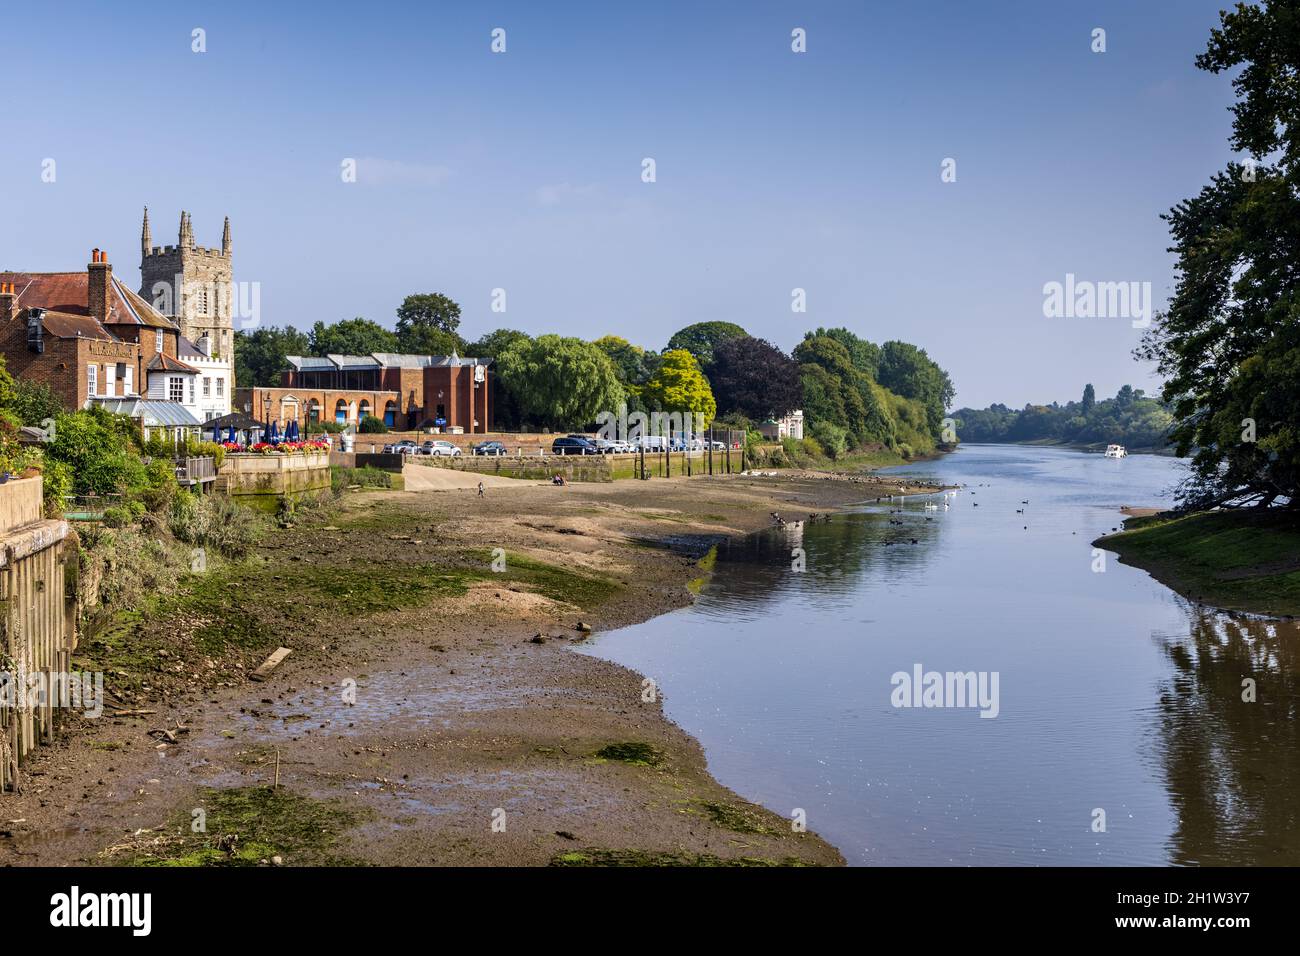 Il Tamigi a Isleworth con la bassa marea, la chiesa All Saints e il pub London Apprentice sulla sinistra e Isleworth Ait sulla destra. Foto Stock